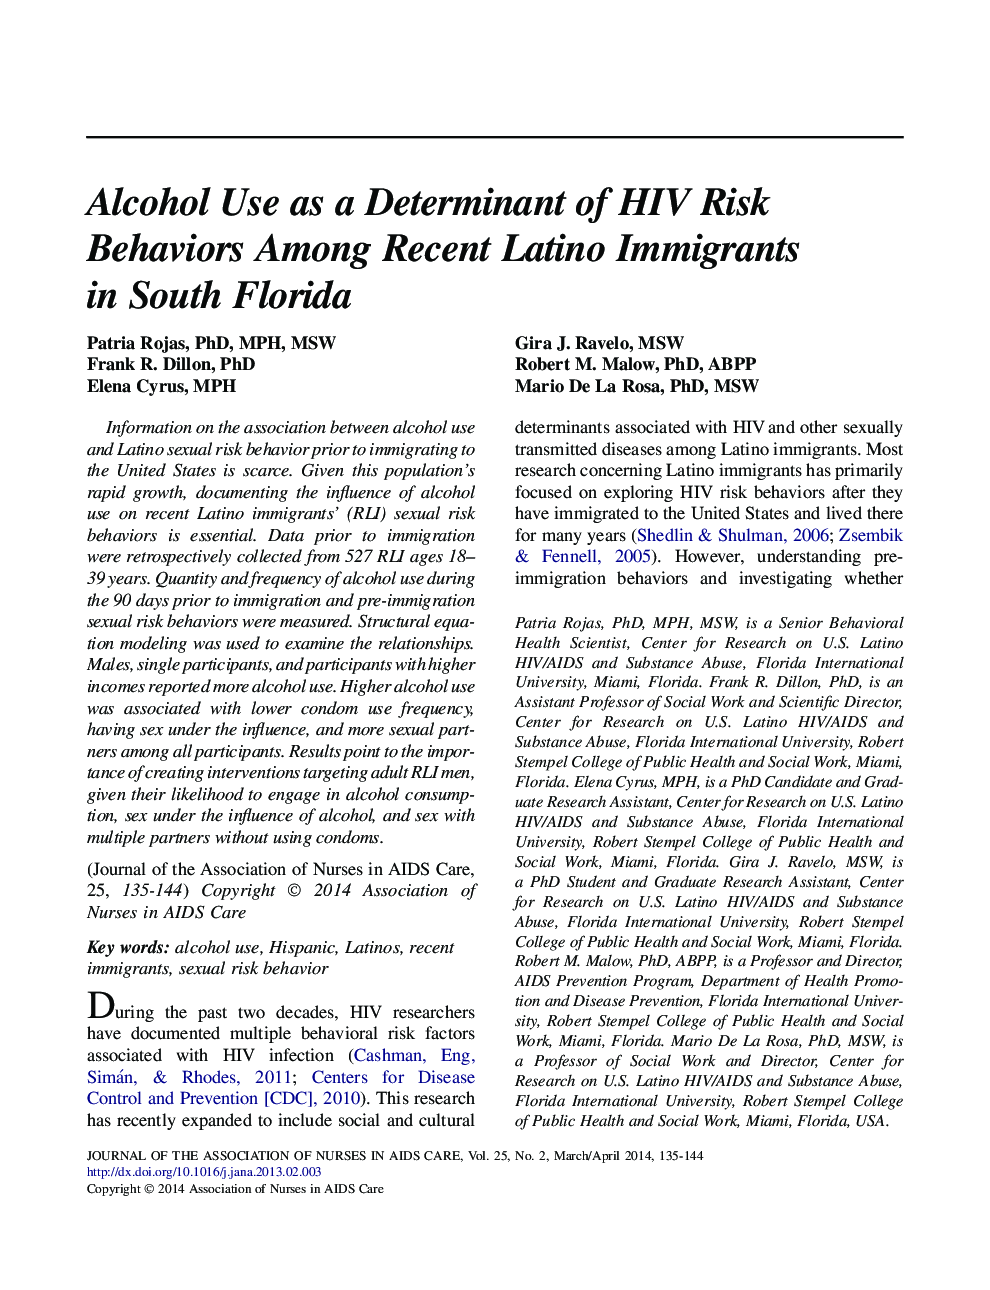 استفاده از الکل به عنوان تعیین کننده رفتارهای پرخطر اچ آی وی در میان مهاجران مهاجر در فلوریدای جنوبی